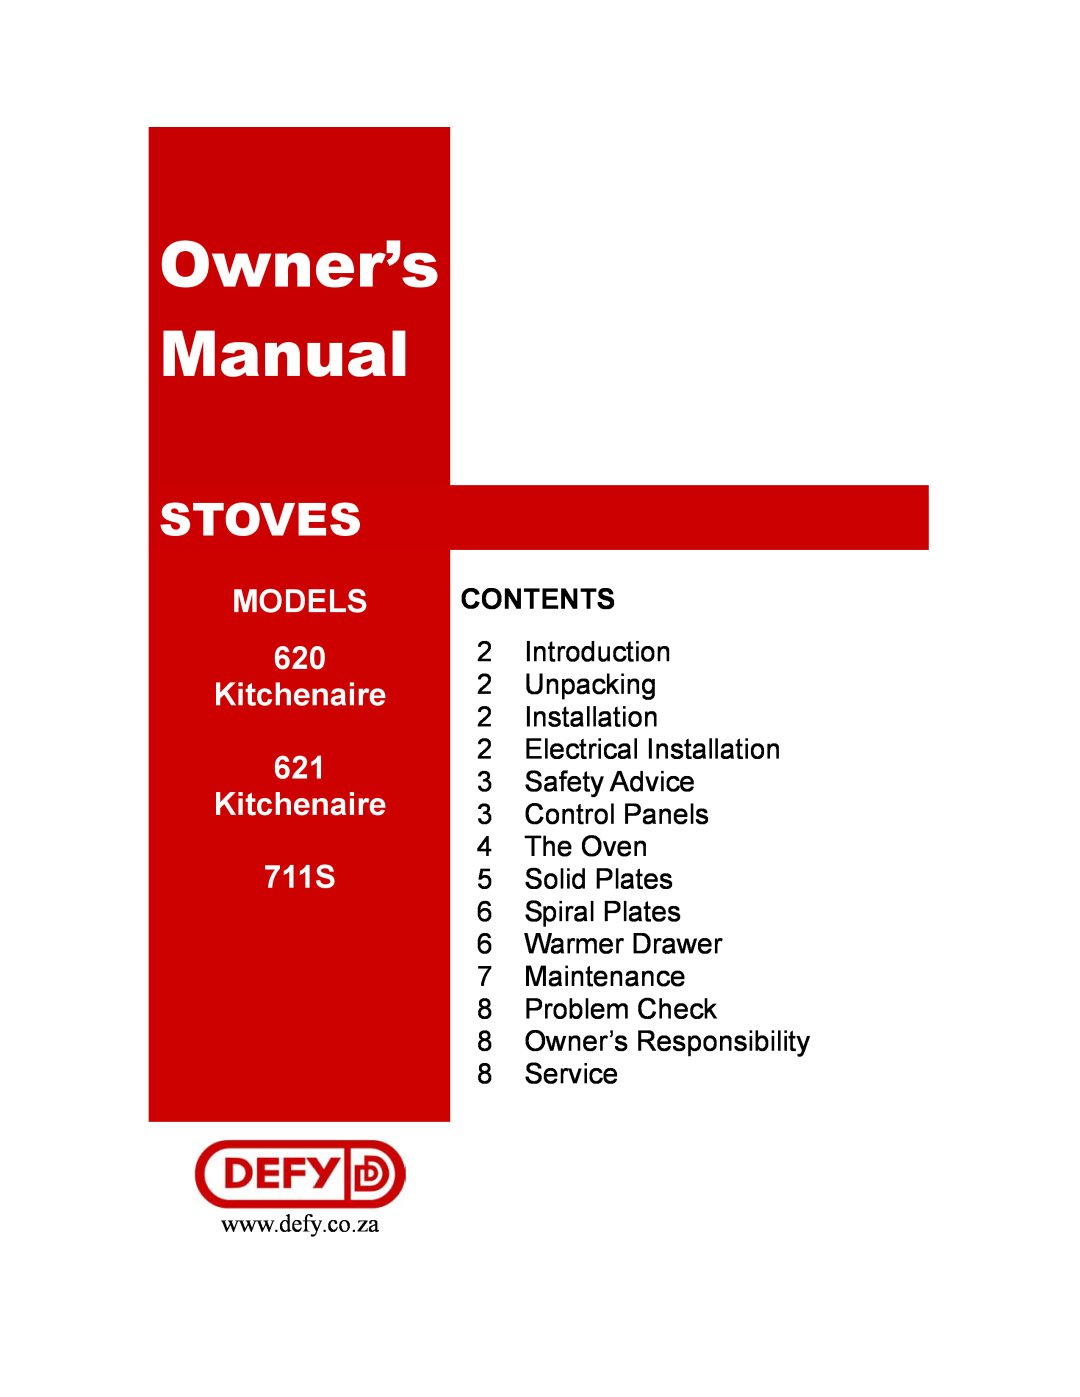 Defy Appliances owner manual Stoves, MODELS 620 Kitchenaire 621 Kitchenaire 711S, Contents 